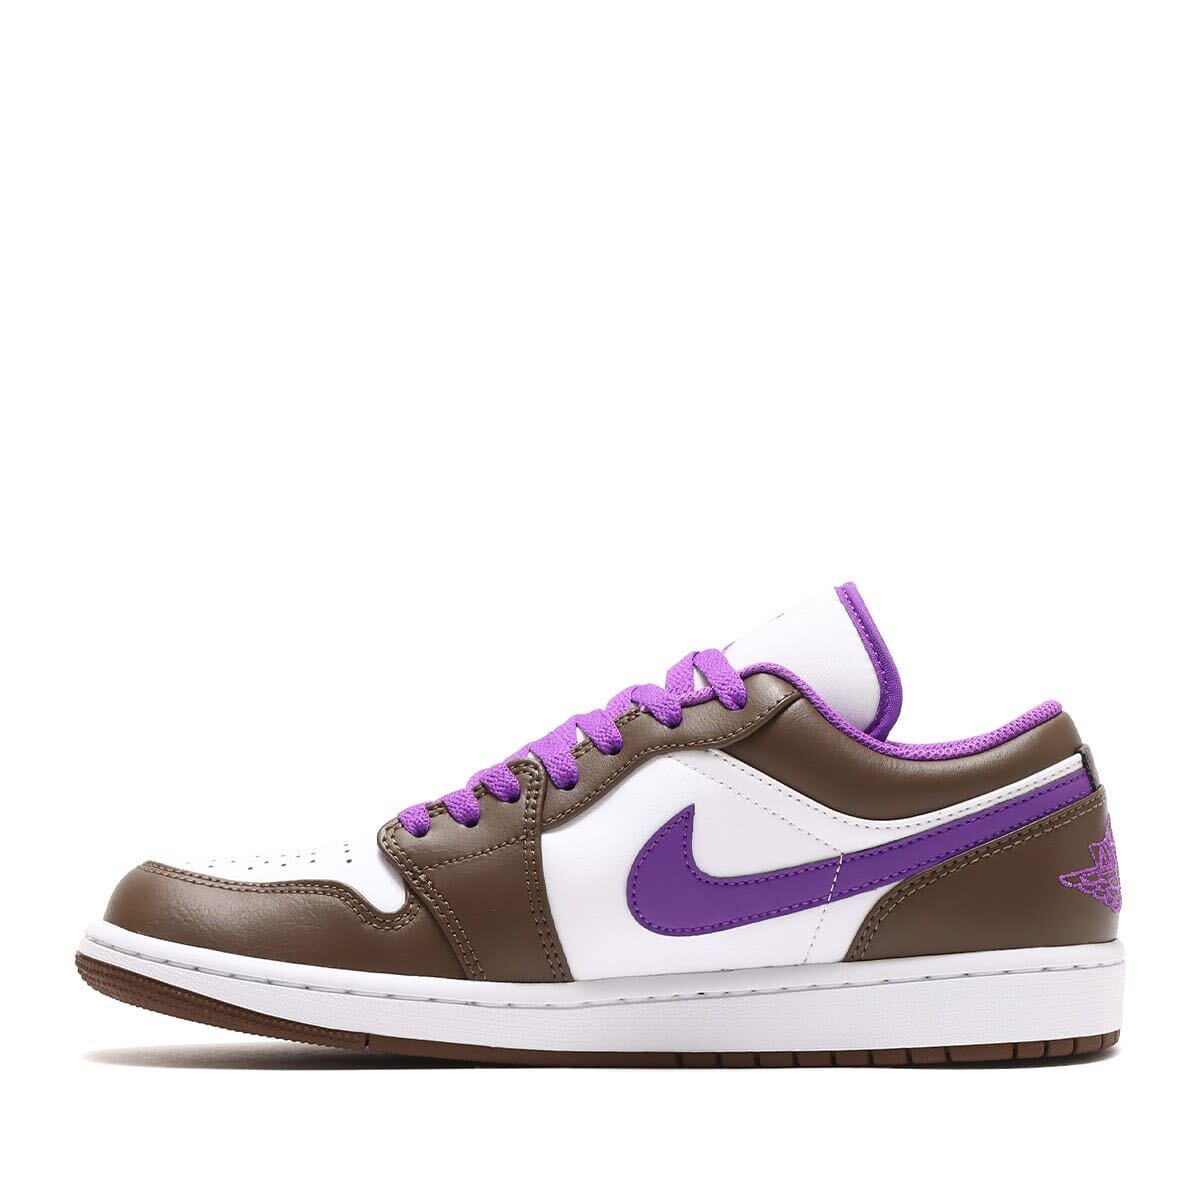 Nike Air Jordan 1 Low Brown and Purple ナイキ エアジョーダン1 ロー ブラウン アンド パープル(553558-215)白 紫 27cm 箱無し_画像5